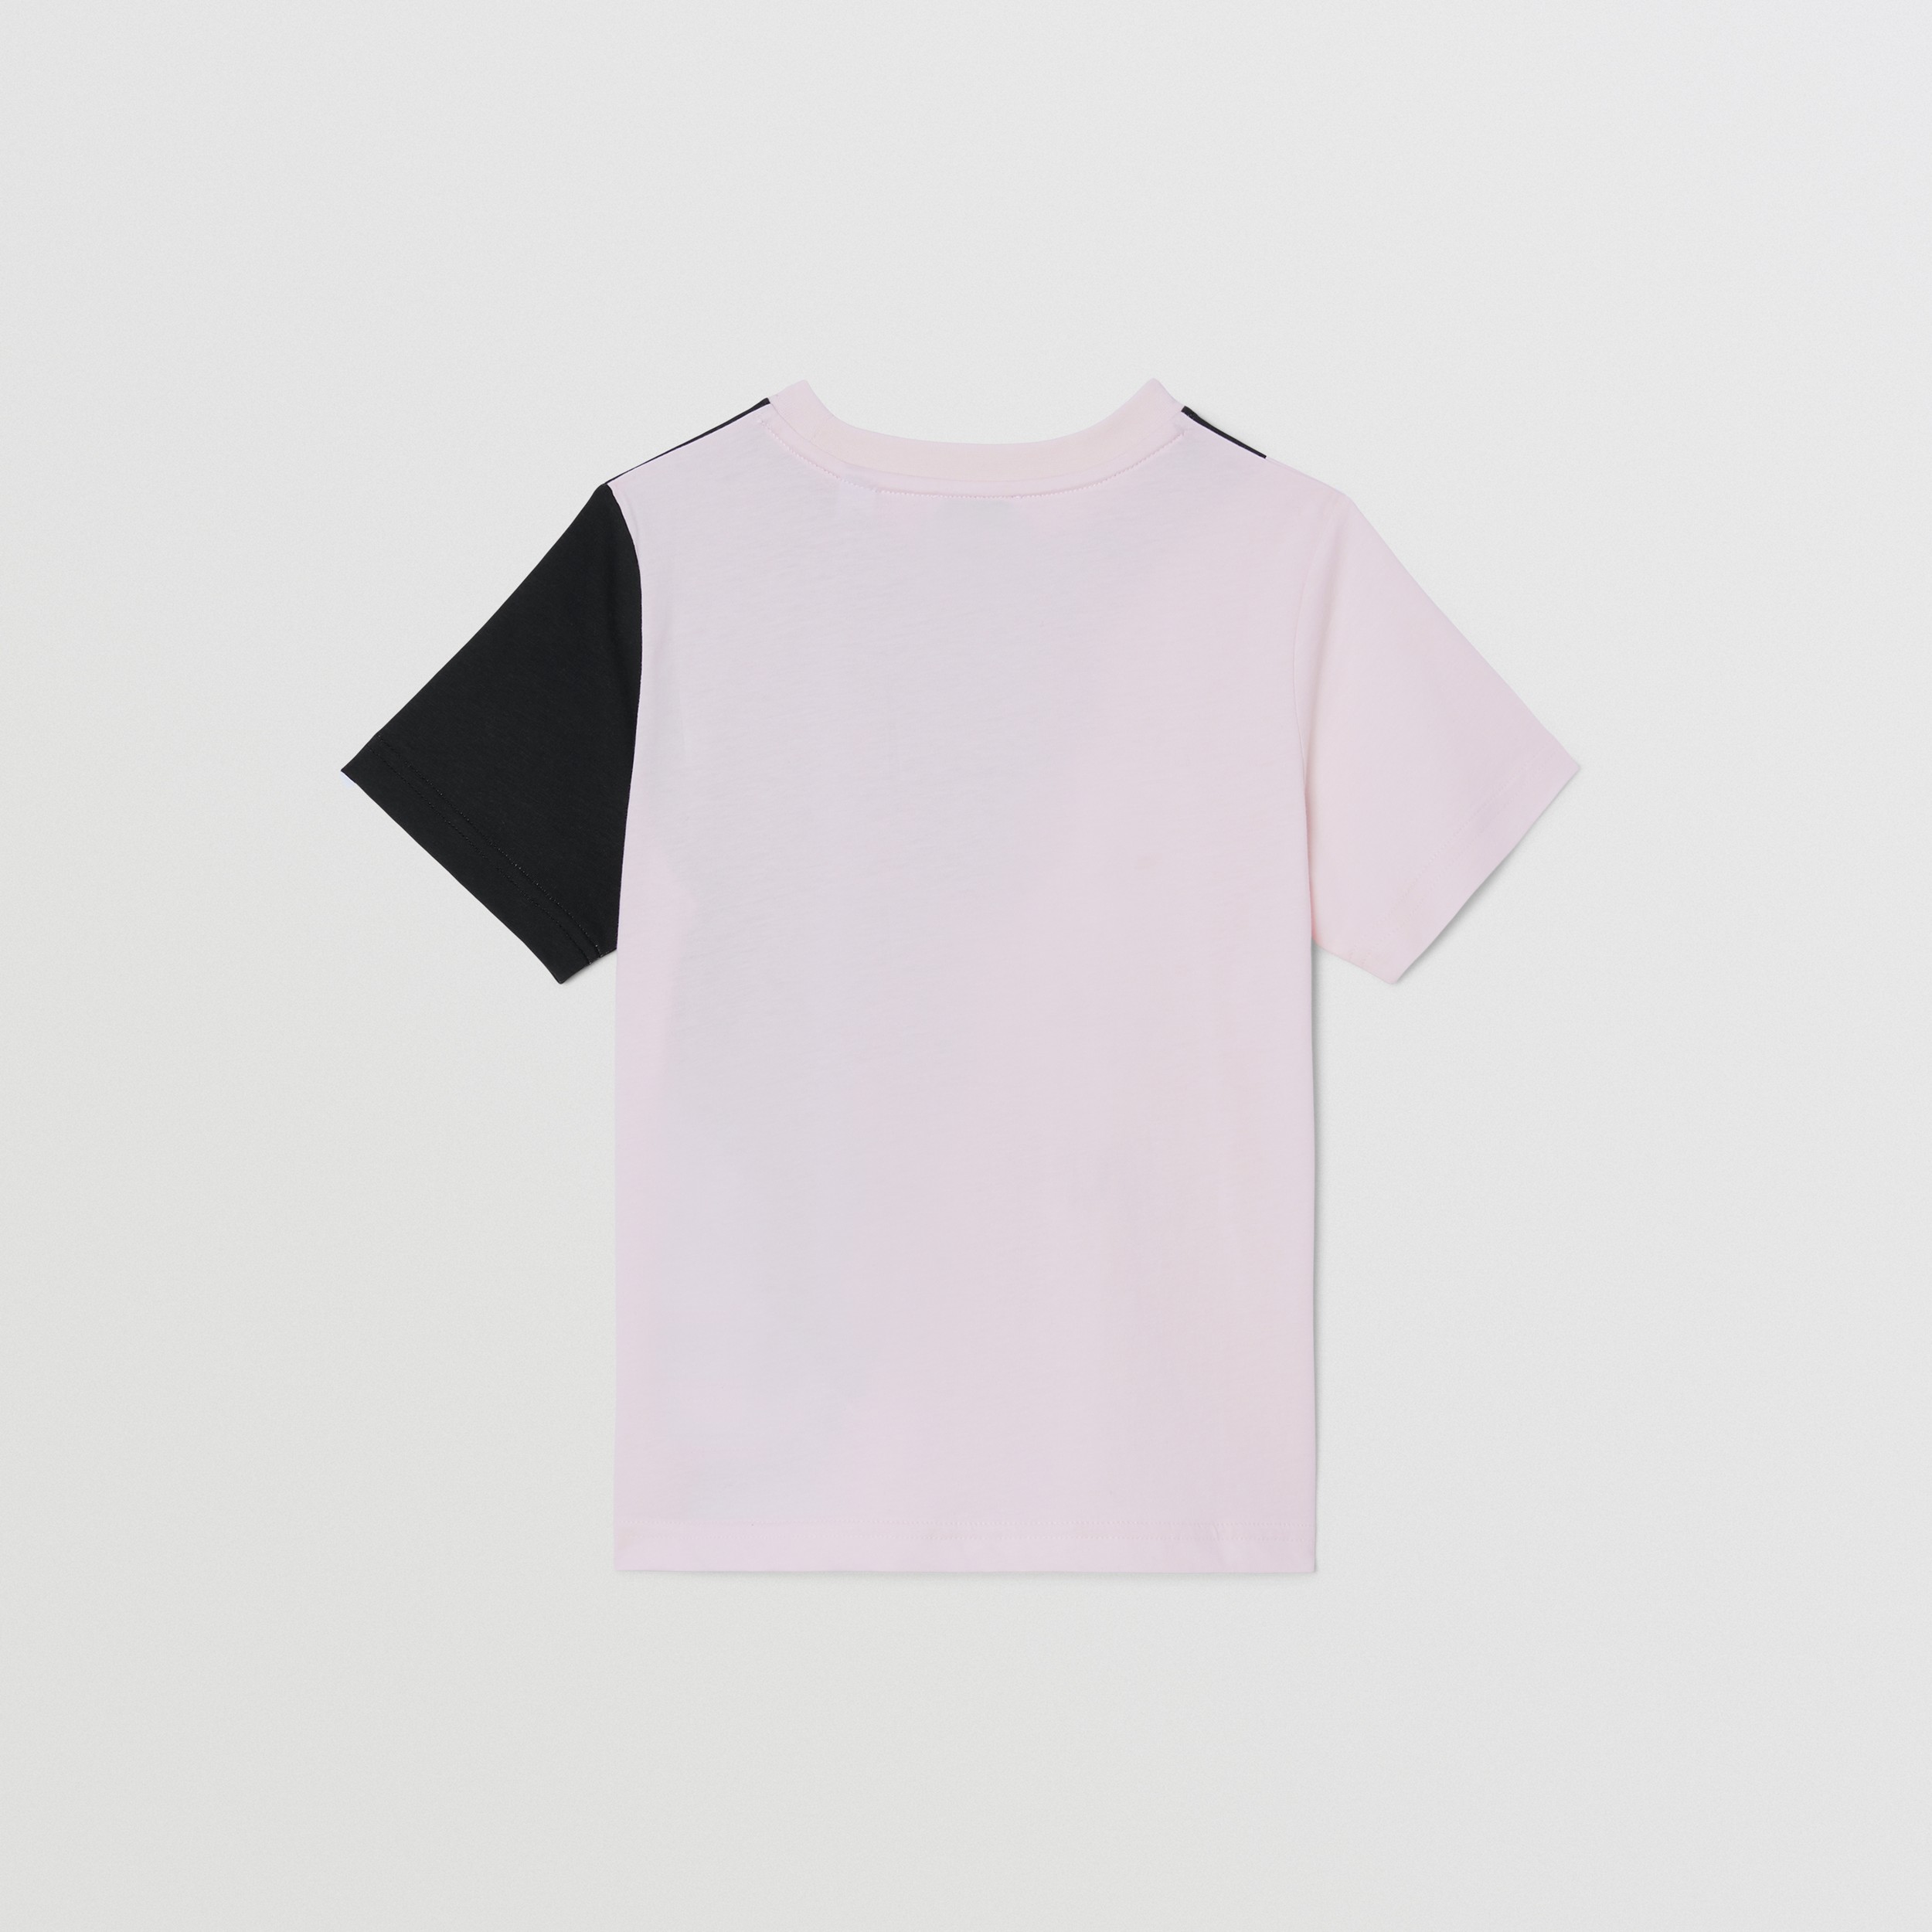 Хлопчатобумажная футболка с коллажным принтом (Розовый Алебастр) | Официальный сайт Burberry® - 3